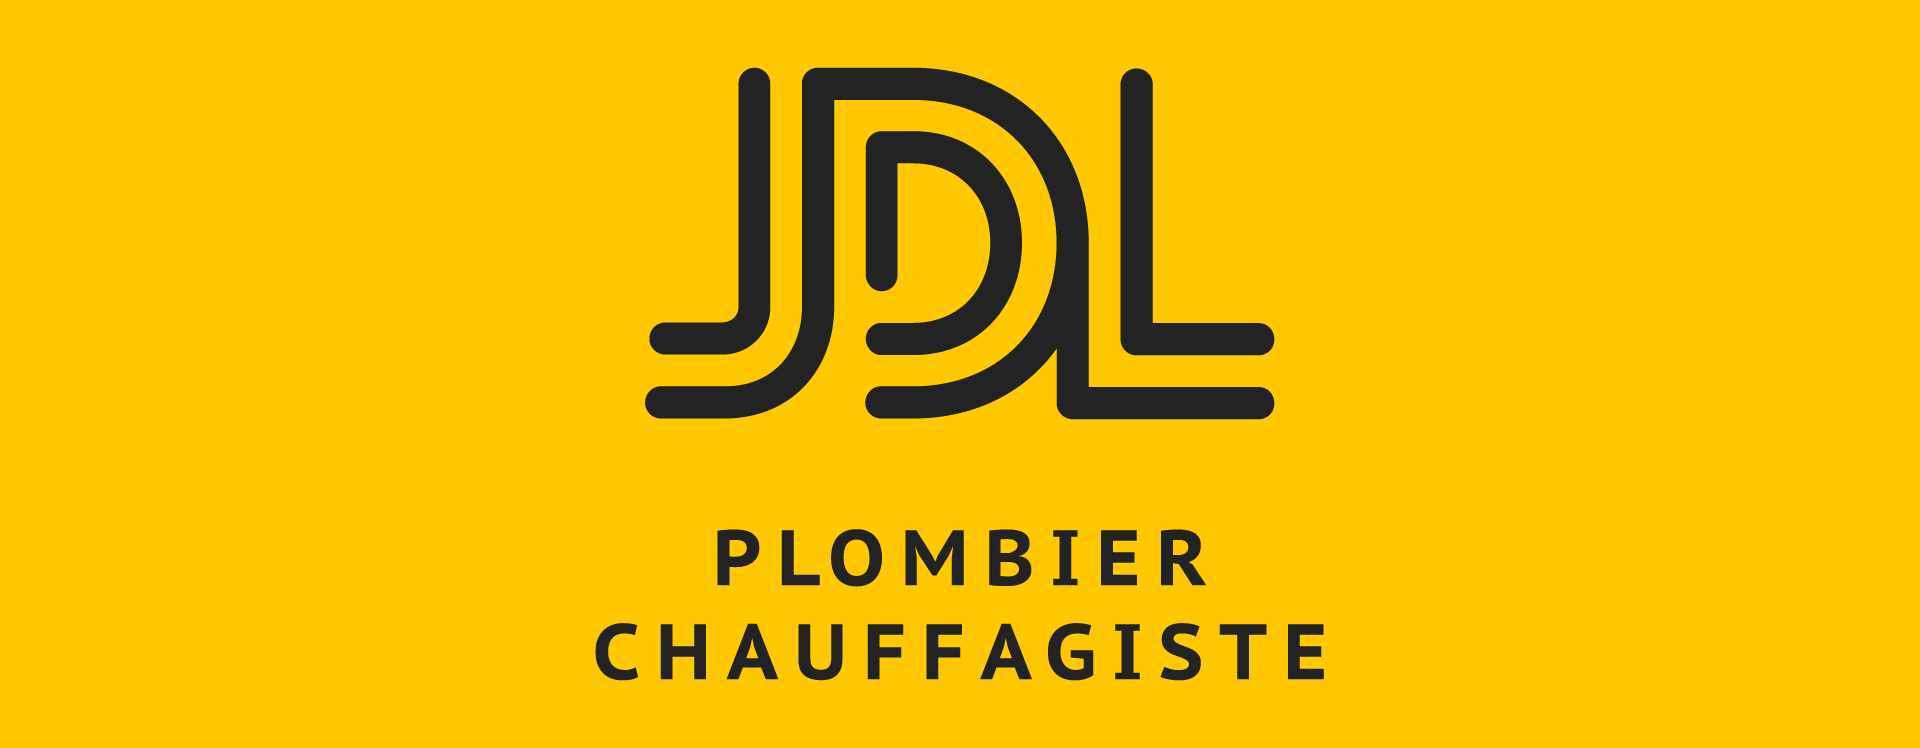 JDL Plombier Chauffagiste